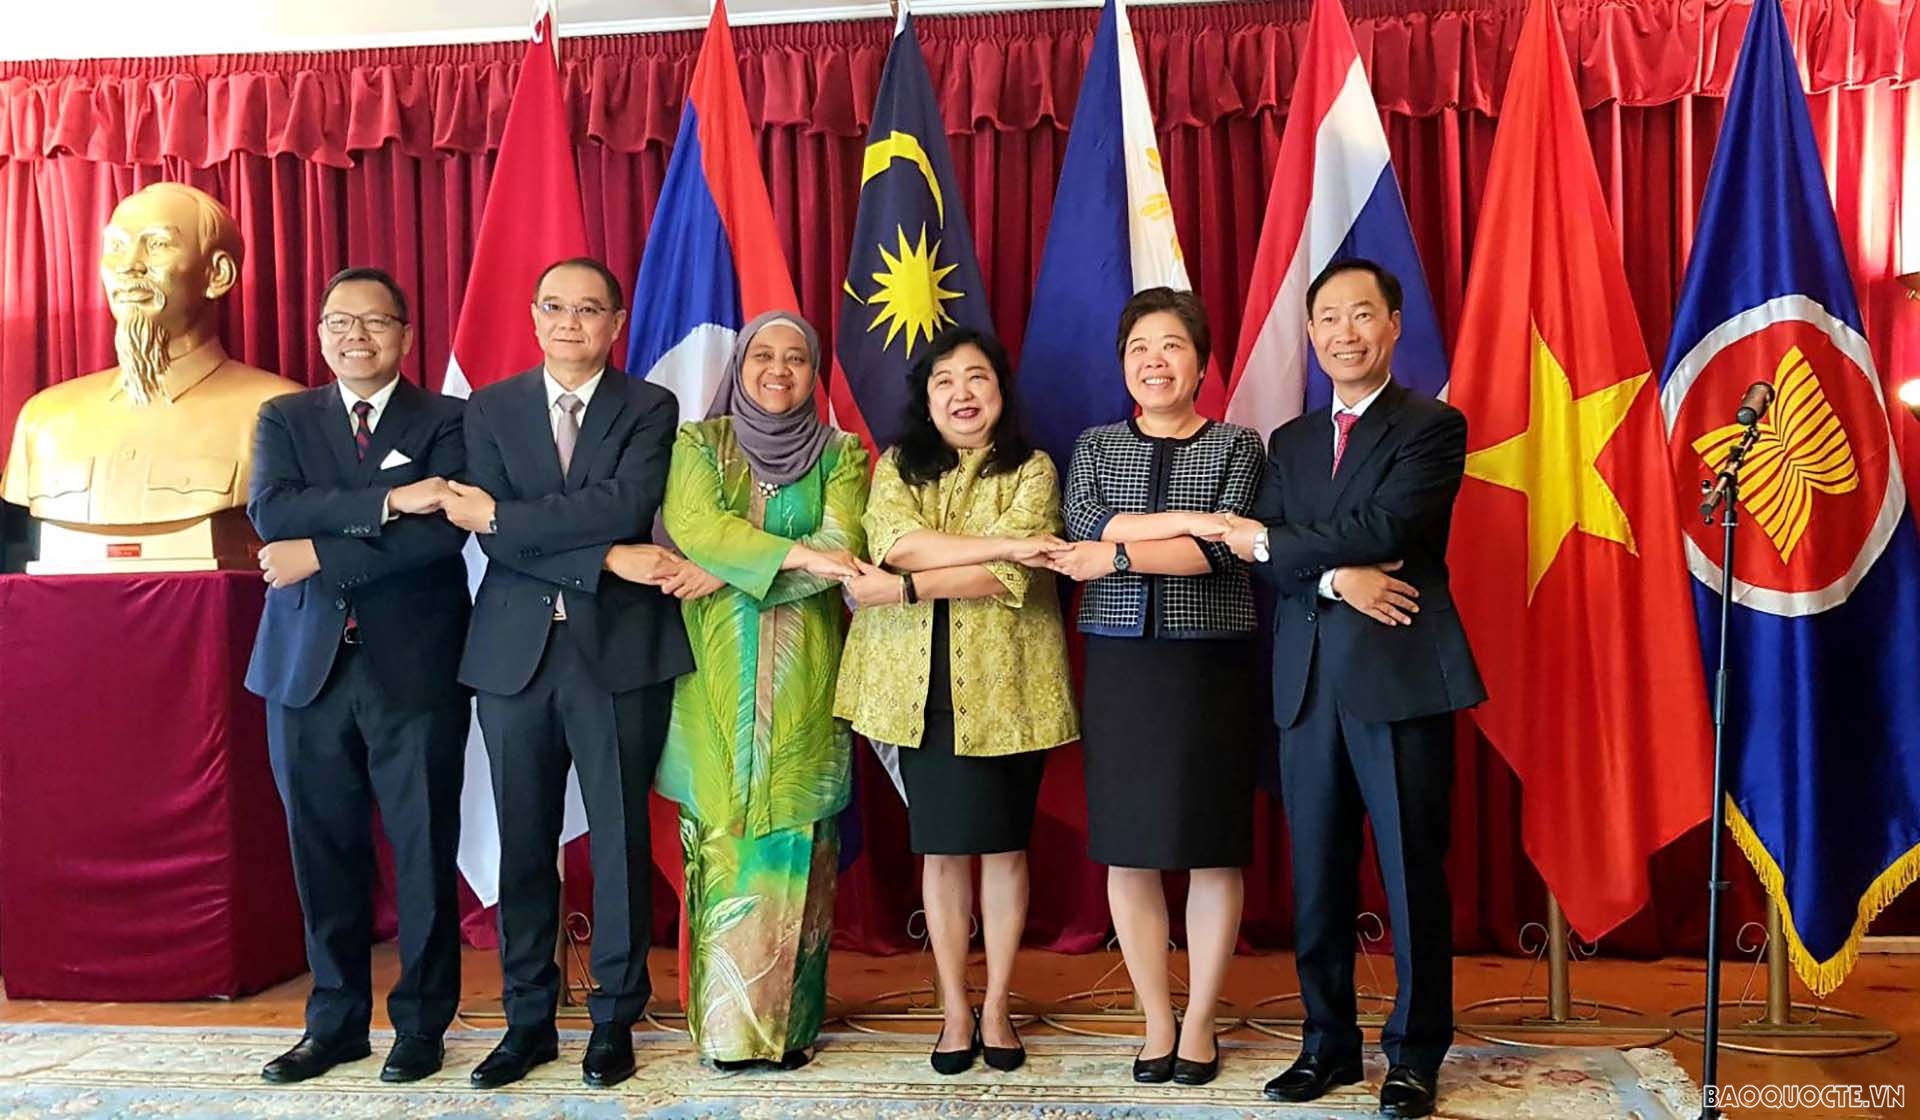 Lễ thượng cờ nhân kỷ niệm 54 năm ngày thành lập ASEAN tại Thụy Điển 2024 - Năm 2024 là năm quan trọng khi ASEAN đánh dấu kỷ niệm 54 năm ngày thành lập. Thụy Điển sẽ là đất nước đăng cai Lễ thượng cờ nhân. Các nhà lãnh đạo đến từ 10 quốc gia sẽ cùng tham gia sự kiện này, tạo ra một không khí đậm chất châu Á, đầy tinh thần đoàn kết và hợp tác. Hãy xem các hình ảnh liên quan và cảm nhận về sự kiện quan trọng này.